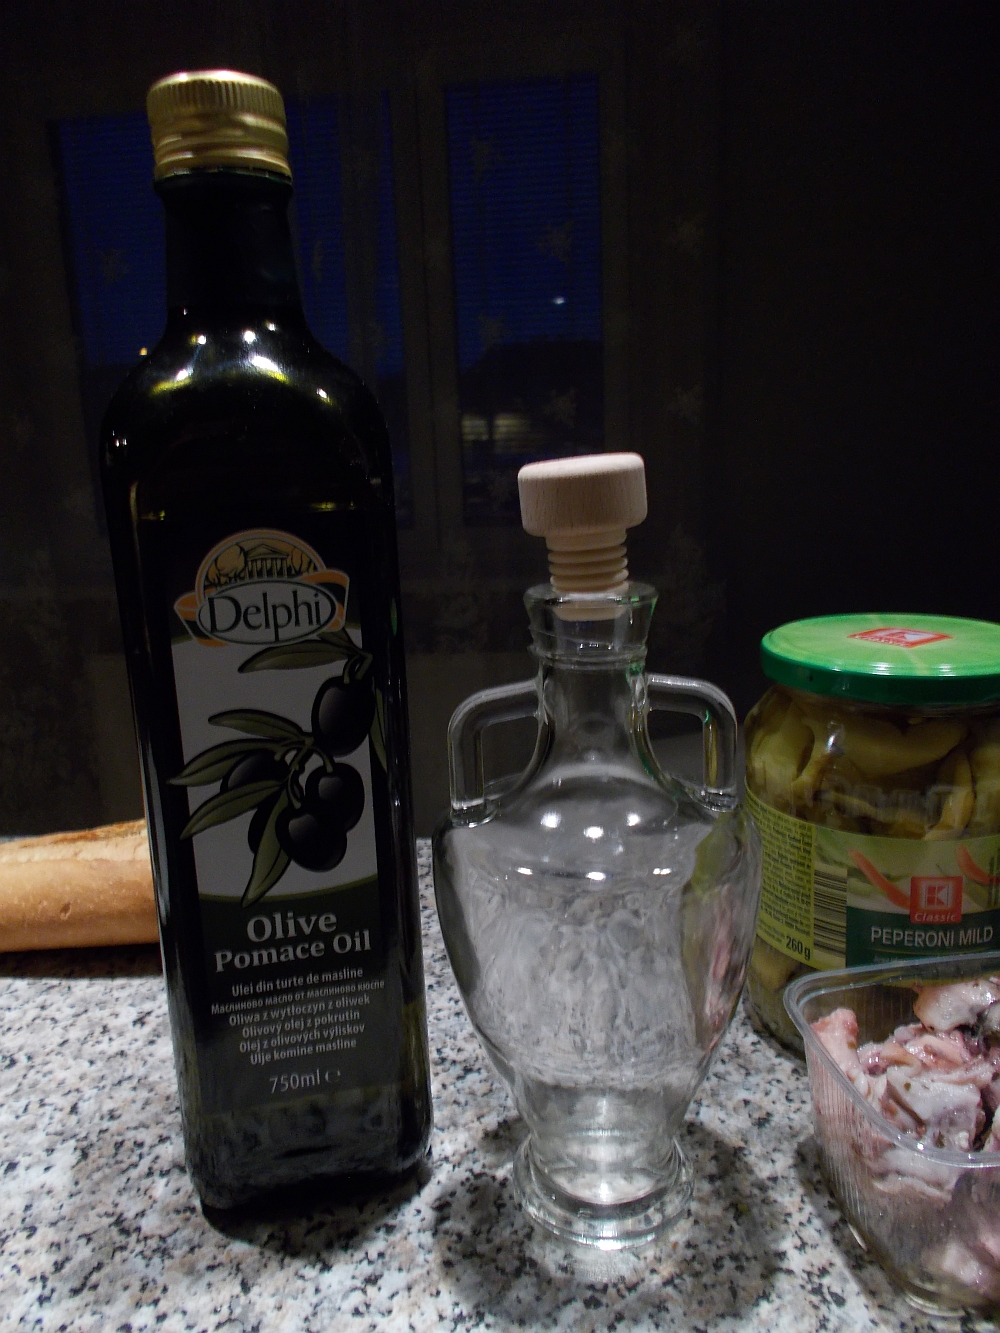 Die antik karafenähnliche Flasche habe ich auf dem Weihnachtsmarkt am Medovina-Stand erhalten.